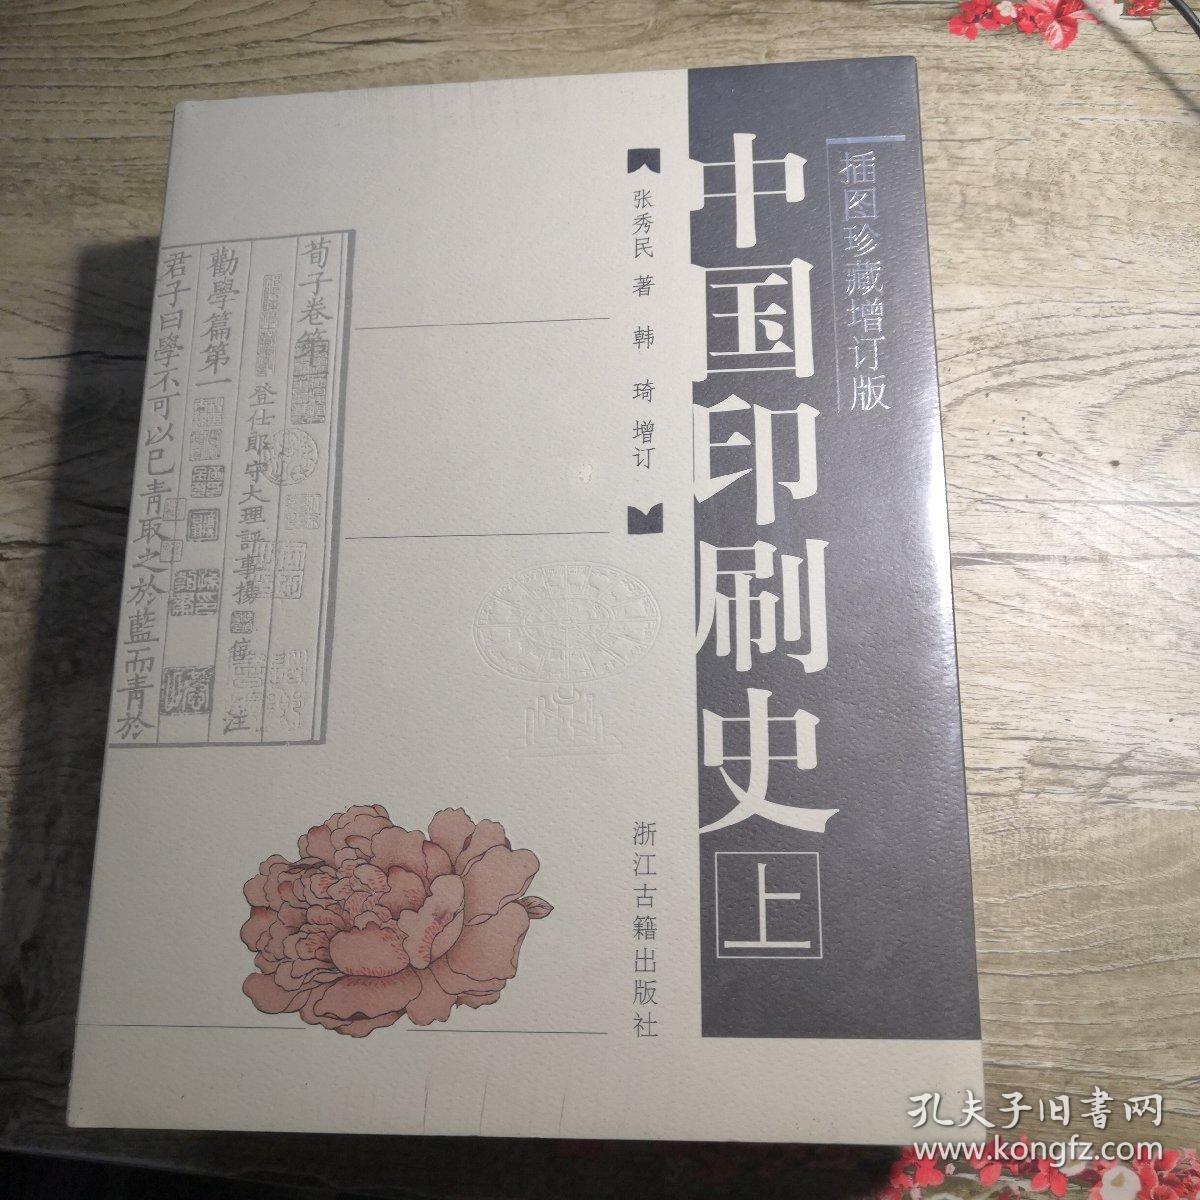 中国印刷史（16开精装  插图珍藏增订版 全二册 ）全新未拆封